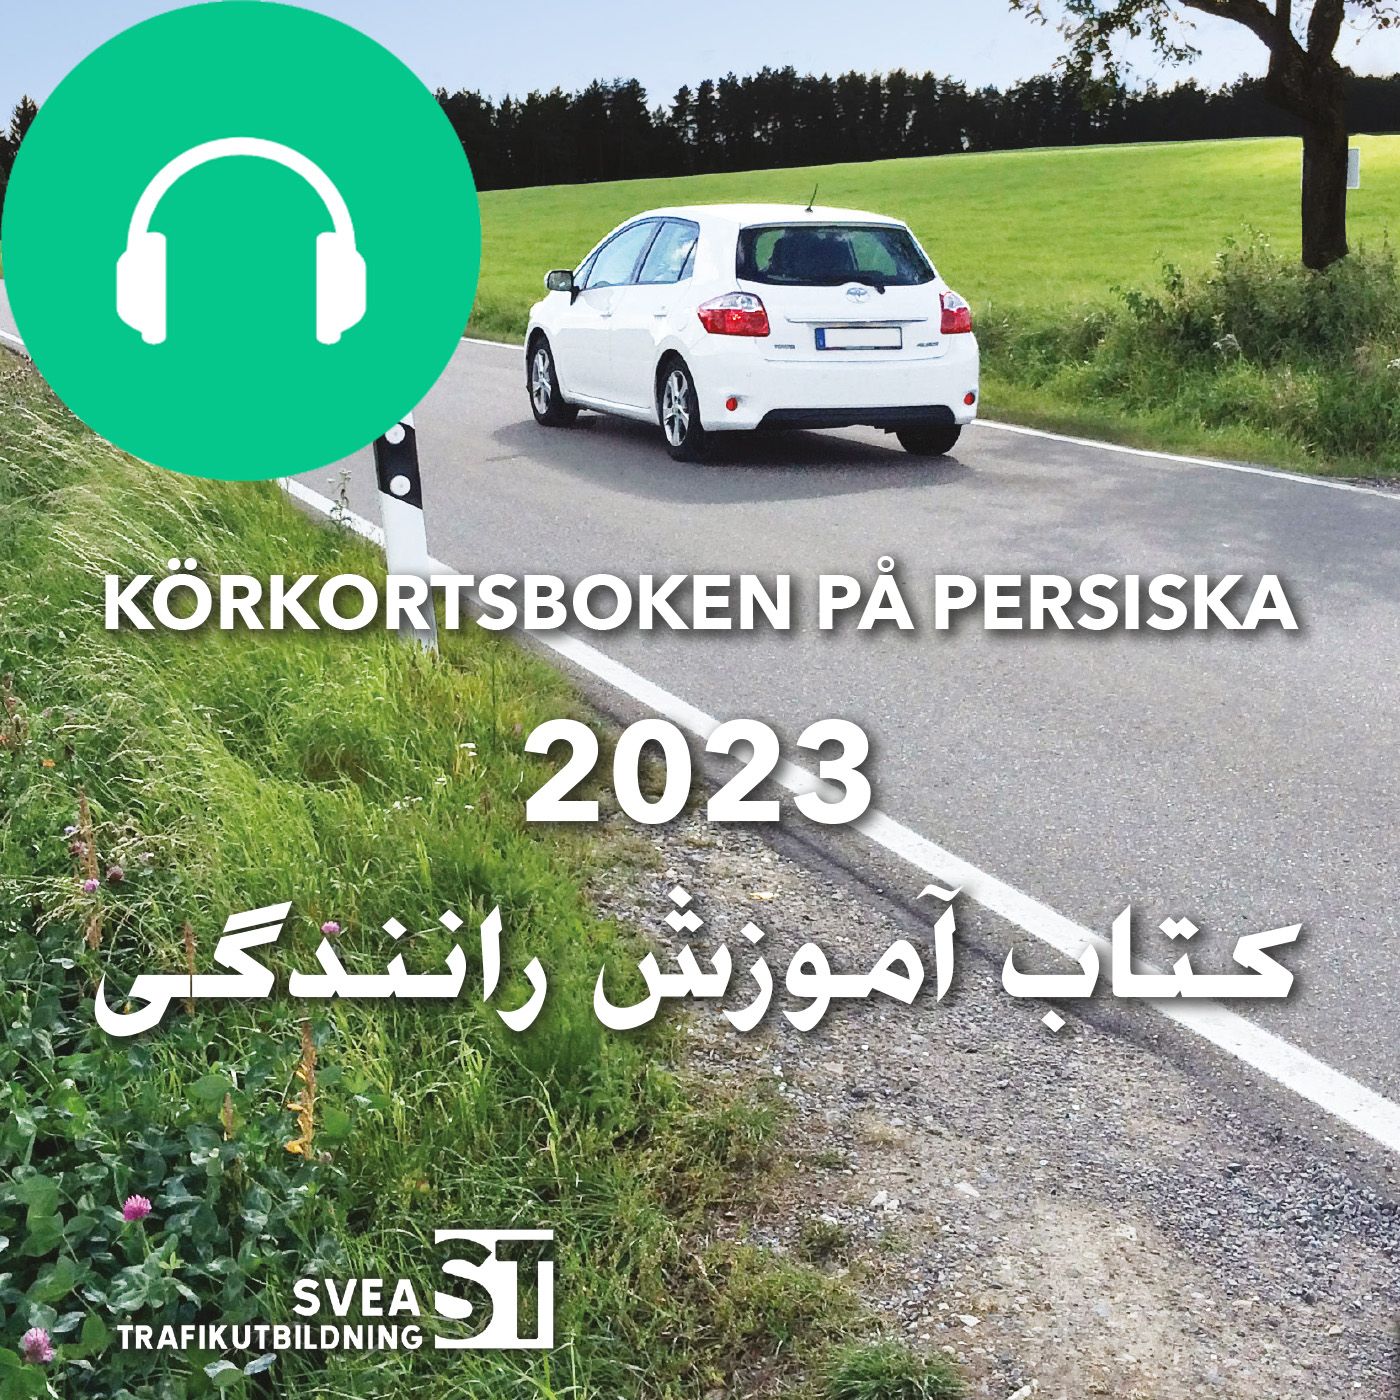 Körkortsboken på Persiska 2023, ljudbok av Svea Trafikutbildning